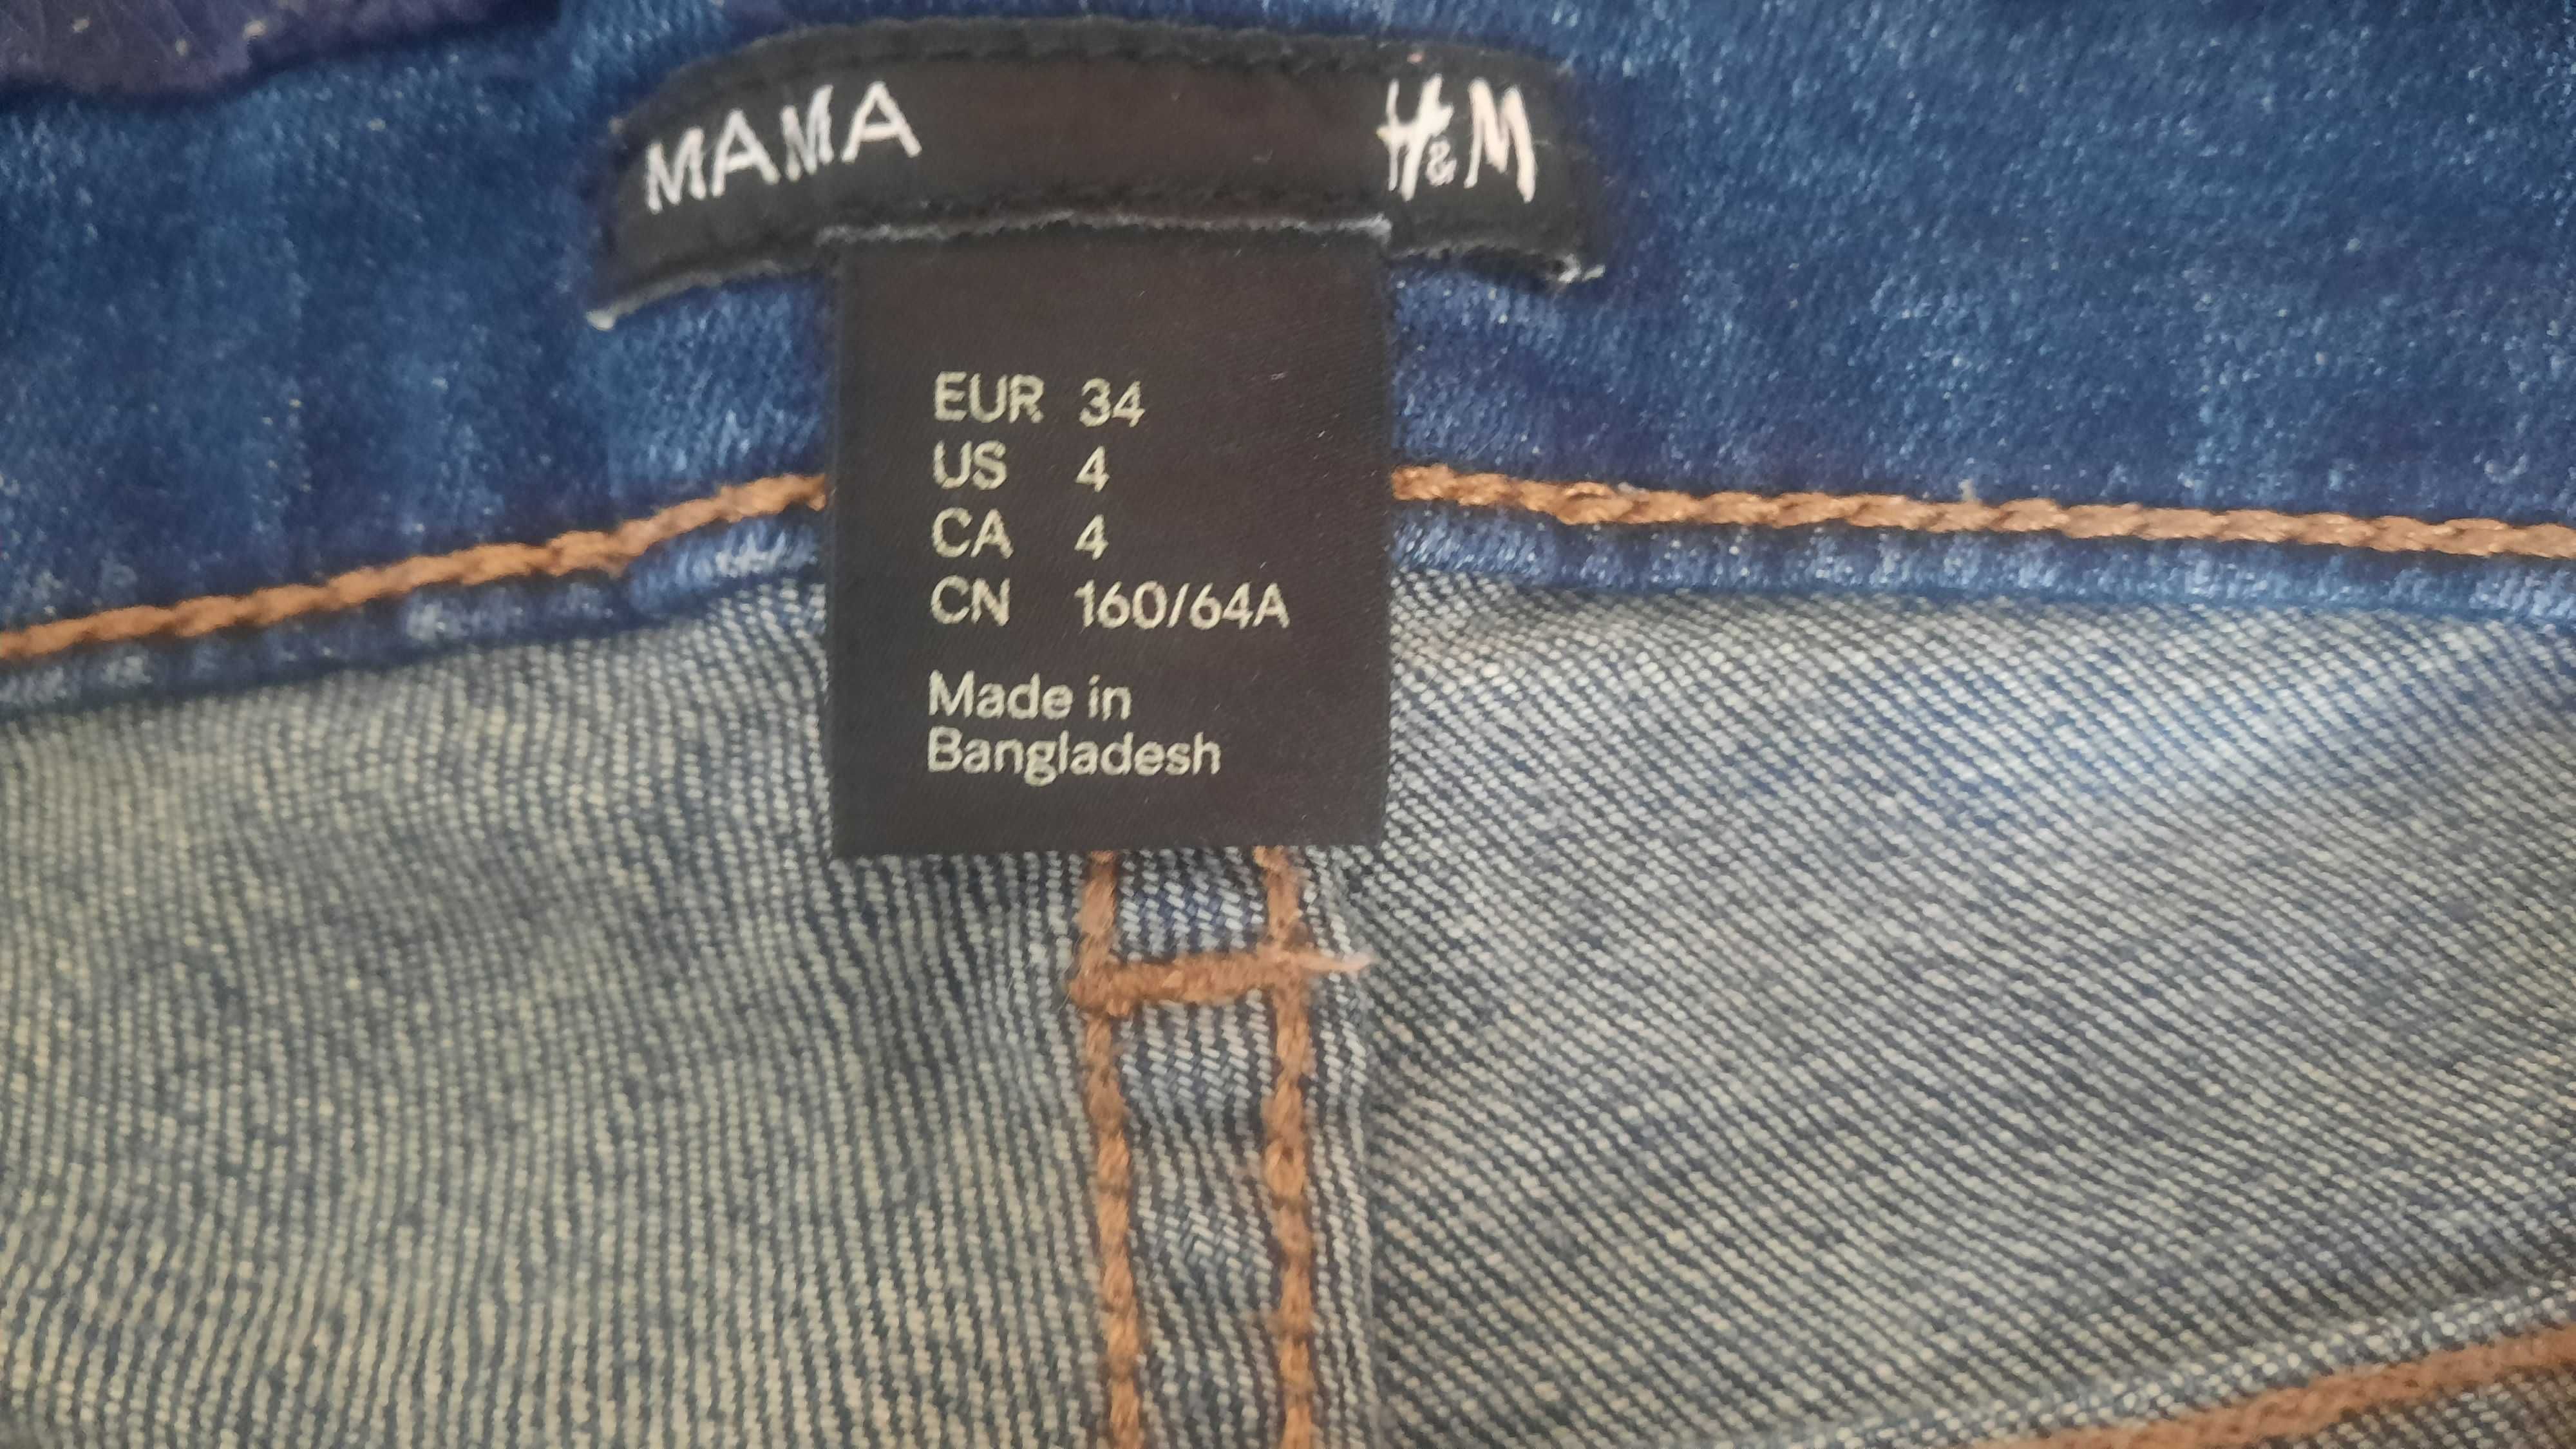 Spodnie ciążowe jeans H&M rozmiar 34